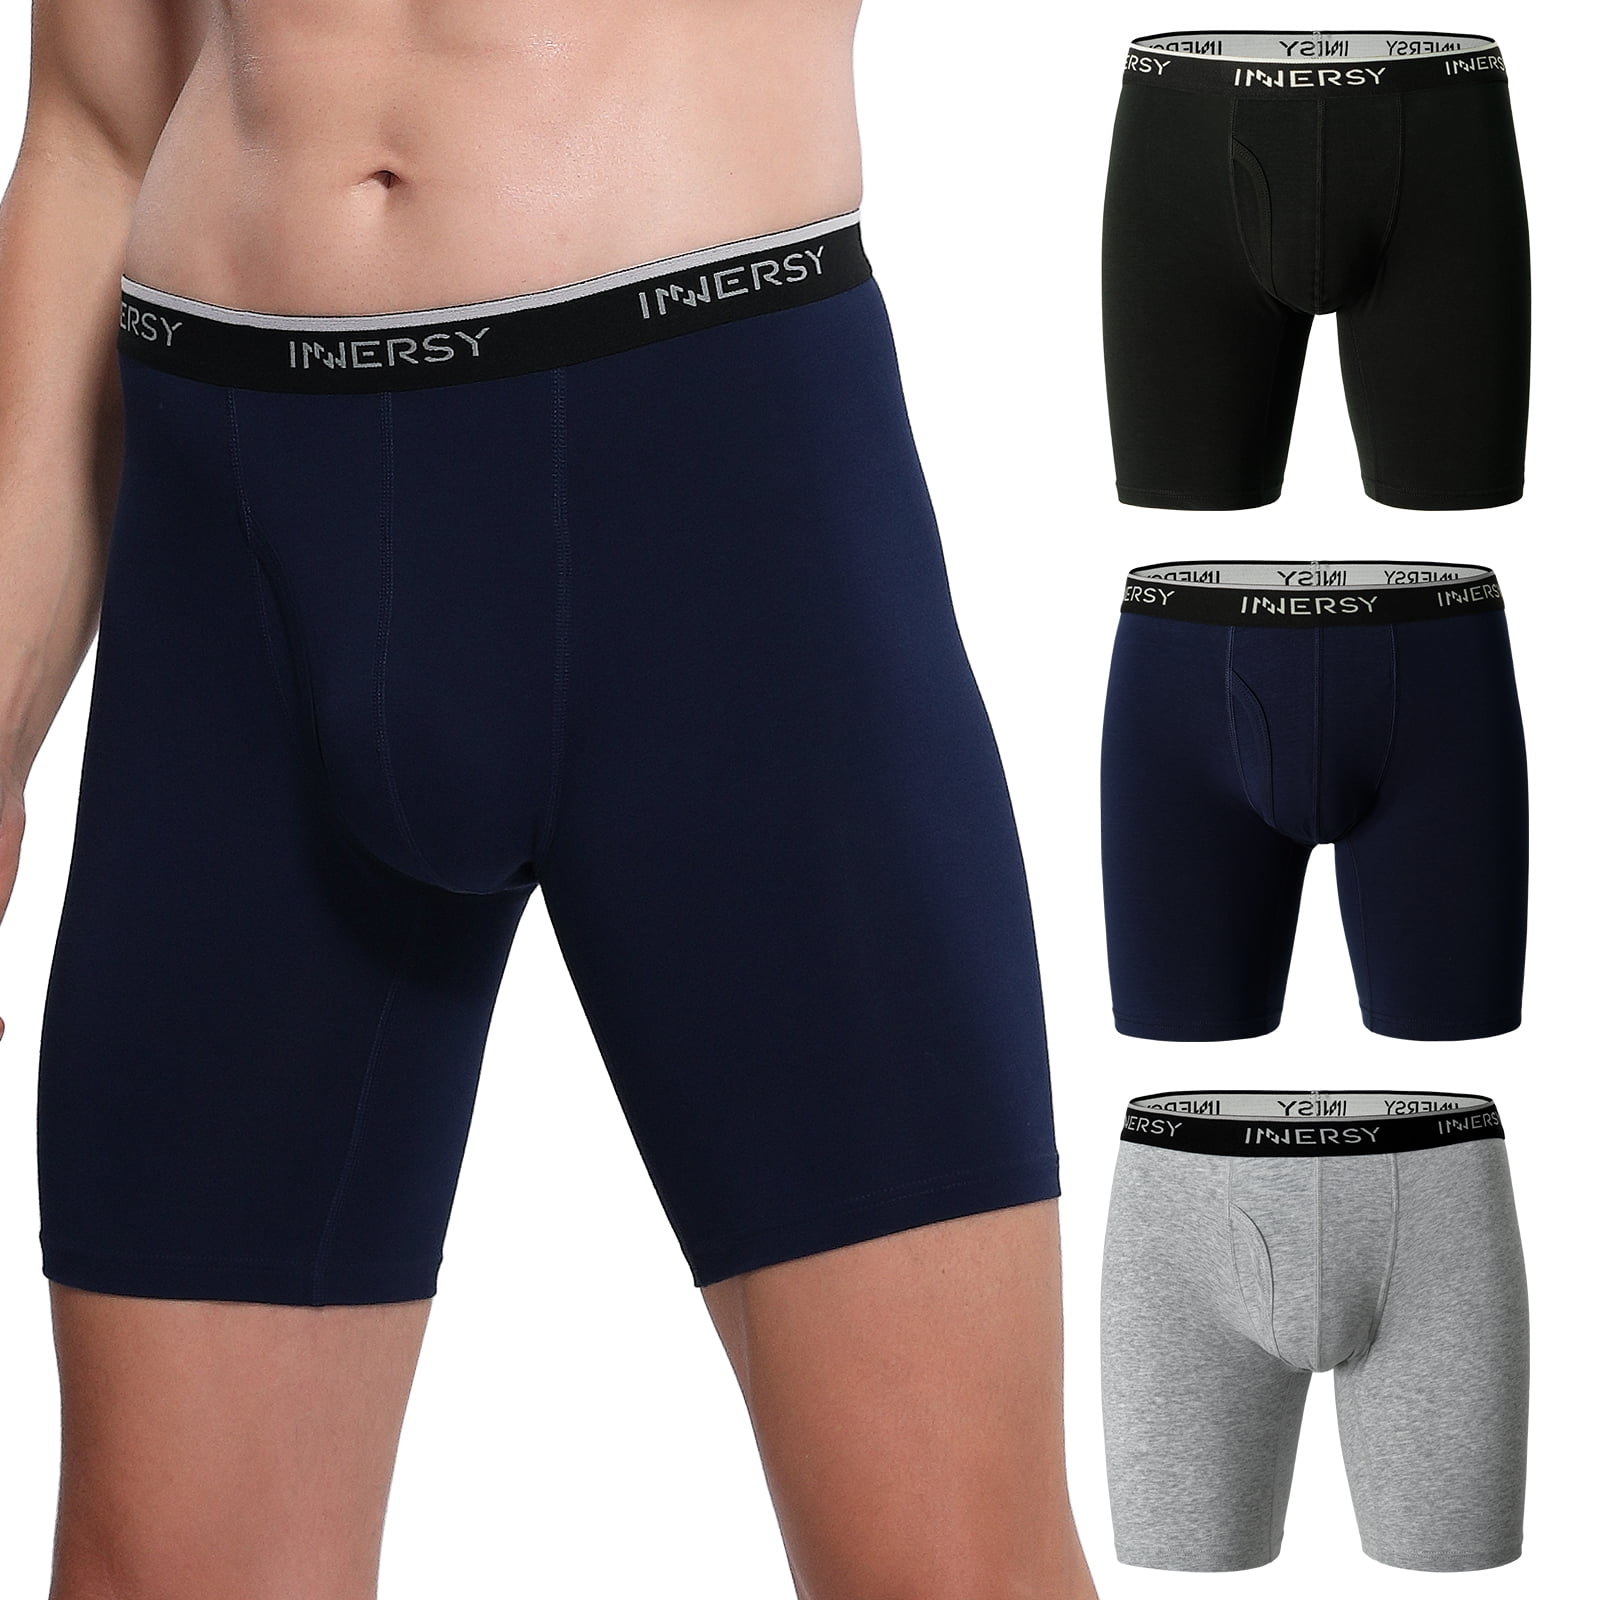 INNERSY Men's Boxer Briefs Cotton Stretchy Underwear 3 Pack(M,Dark)